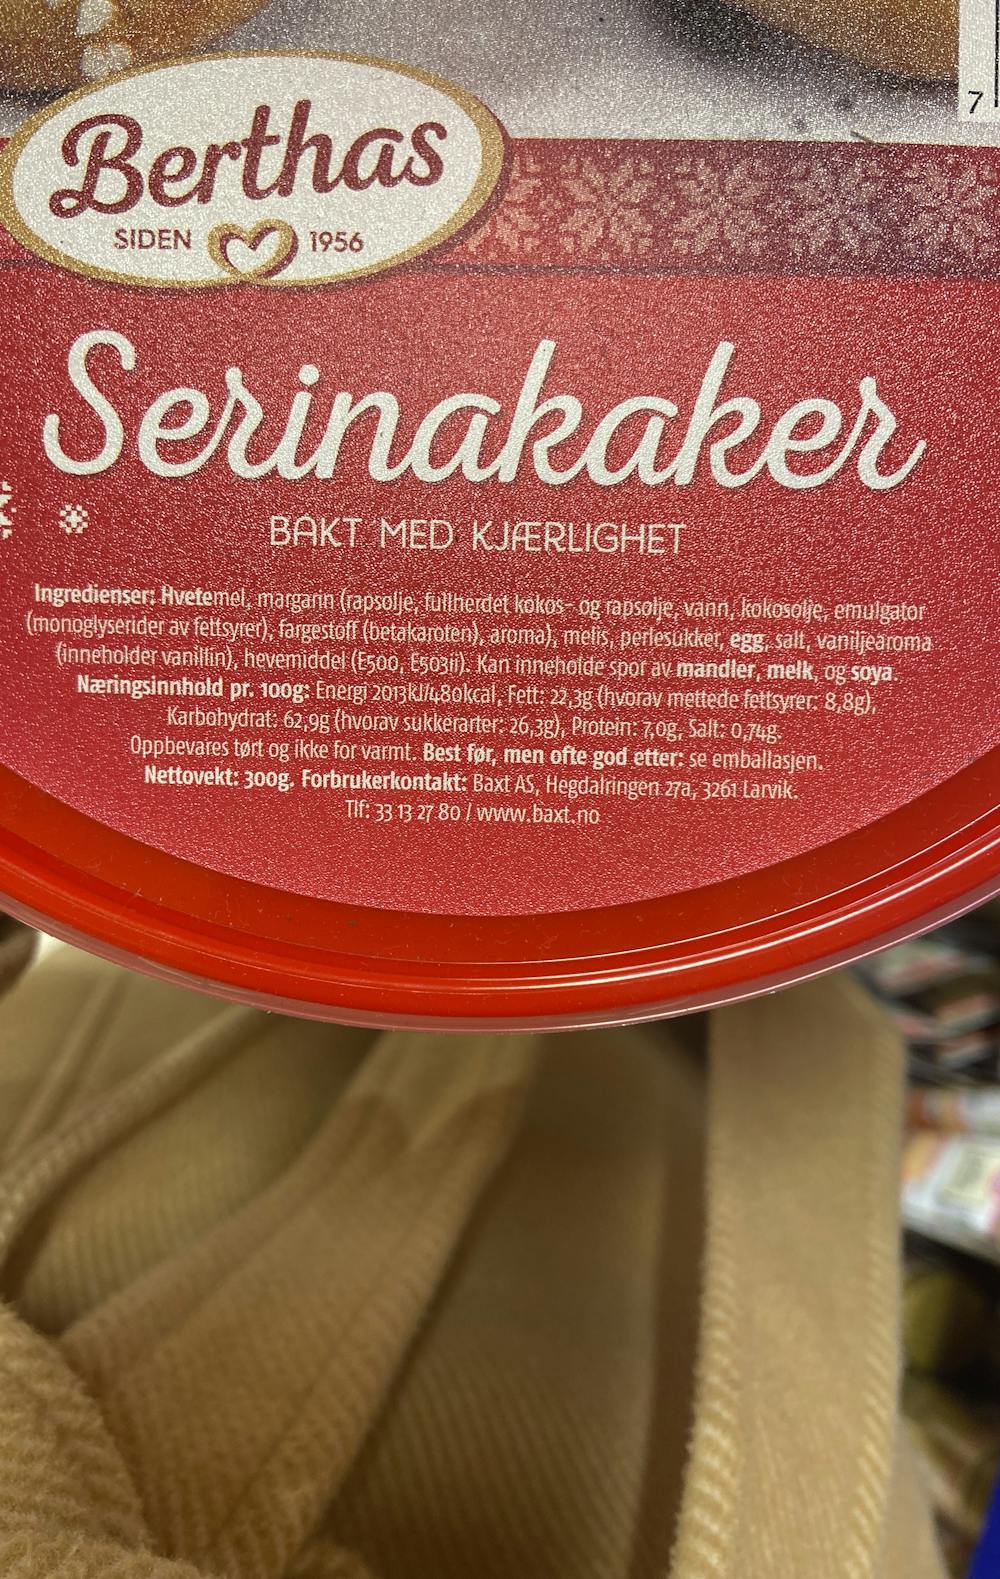 Ingredienslisten til Serinakaker, Berthas